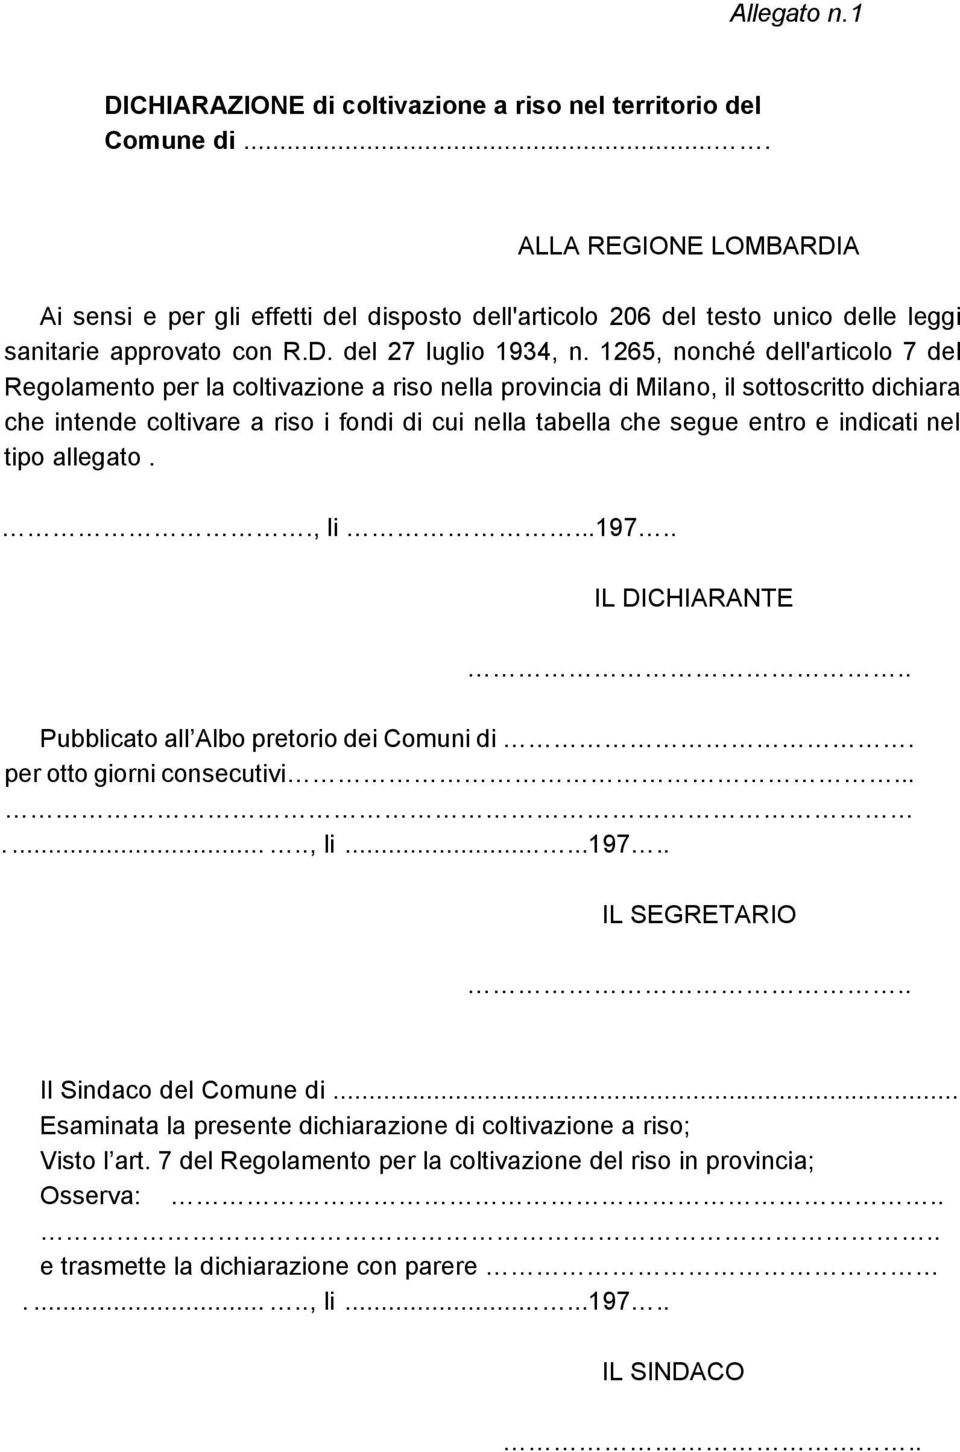 1265, nonché dell'articolo 7 del Regolamento per la coltivazione a riso nella provincia di Milano, il sottoscritto dichiara che intende coltivare a riso i fondi di cui nella tabella che segue entro e